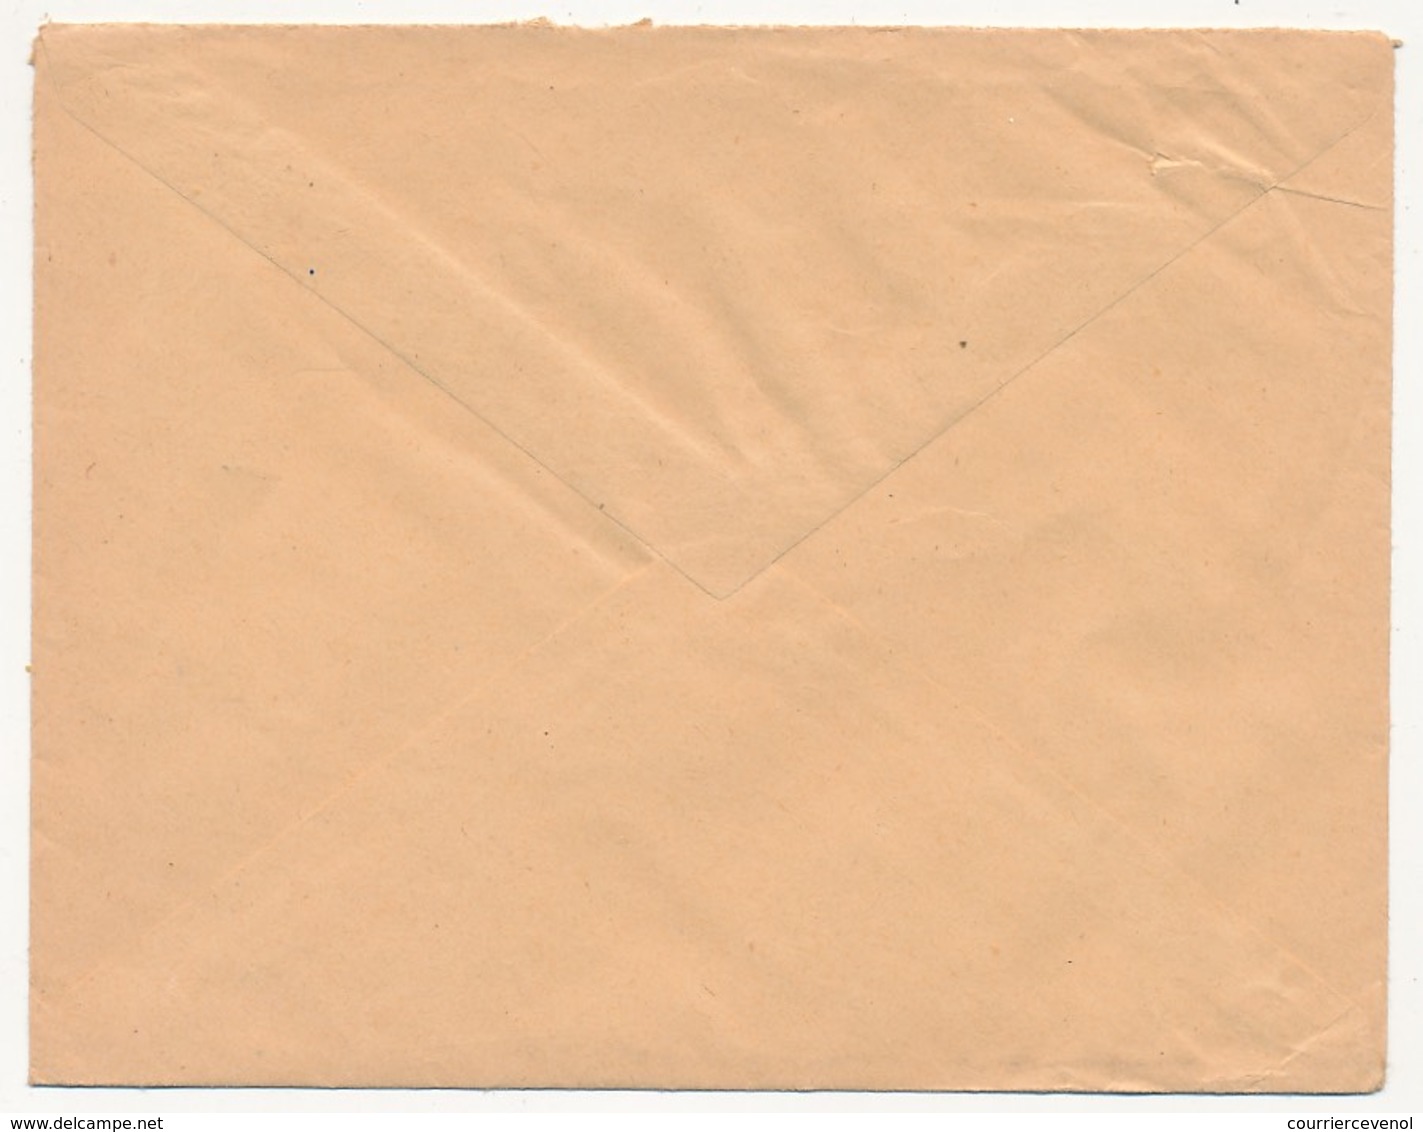 FRANCE - Enveloppe Affr 25F Muller Avec Vignette "L'Hopital Problème National" - Hopital De Montbéliard (Doubs) 1959 - Covers & Documents